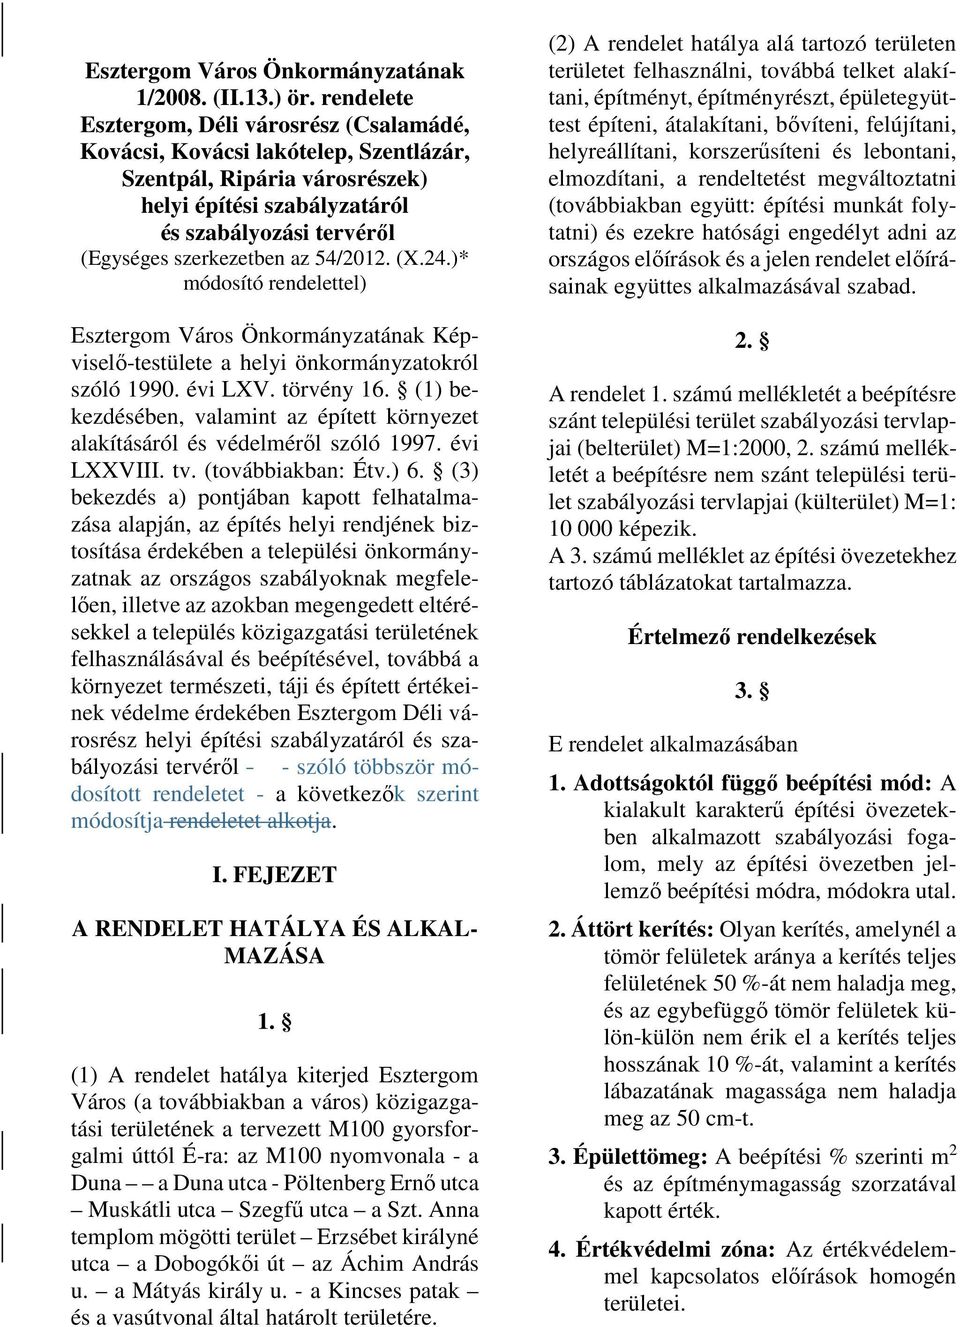 54/2012. (X.24.)* módosító rendelettel) Esztergom Város Önkormányzatának Képviselő-testülete a helyi önkormányzatokról szóló 1990. évi LXV. törvény 16.